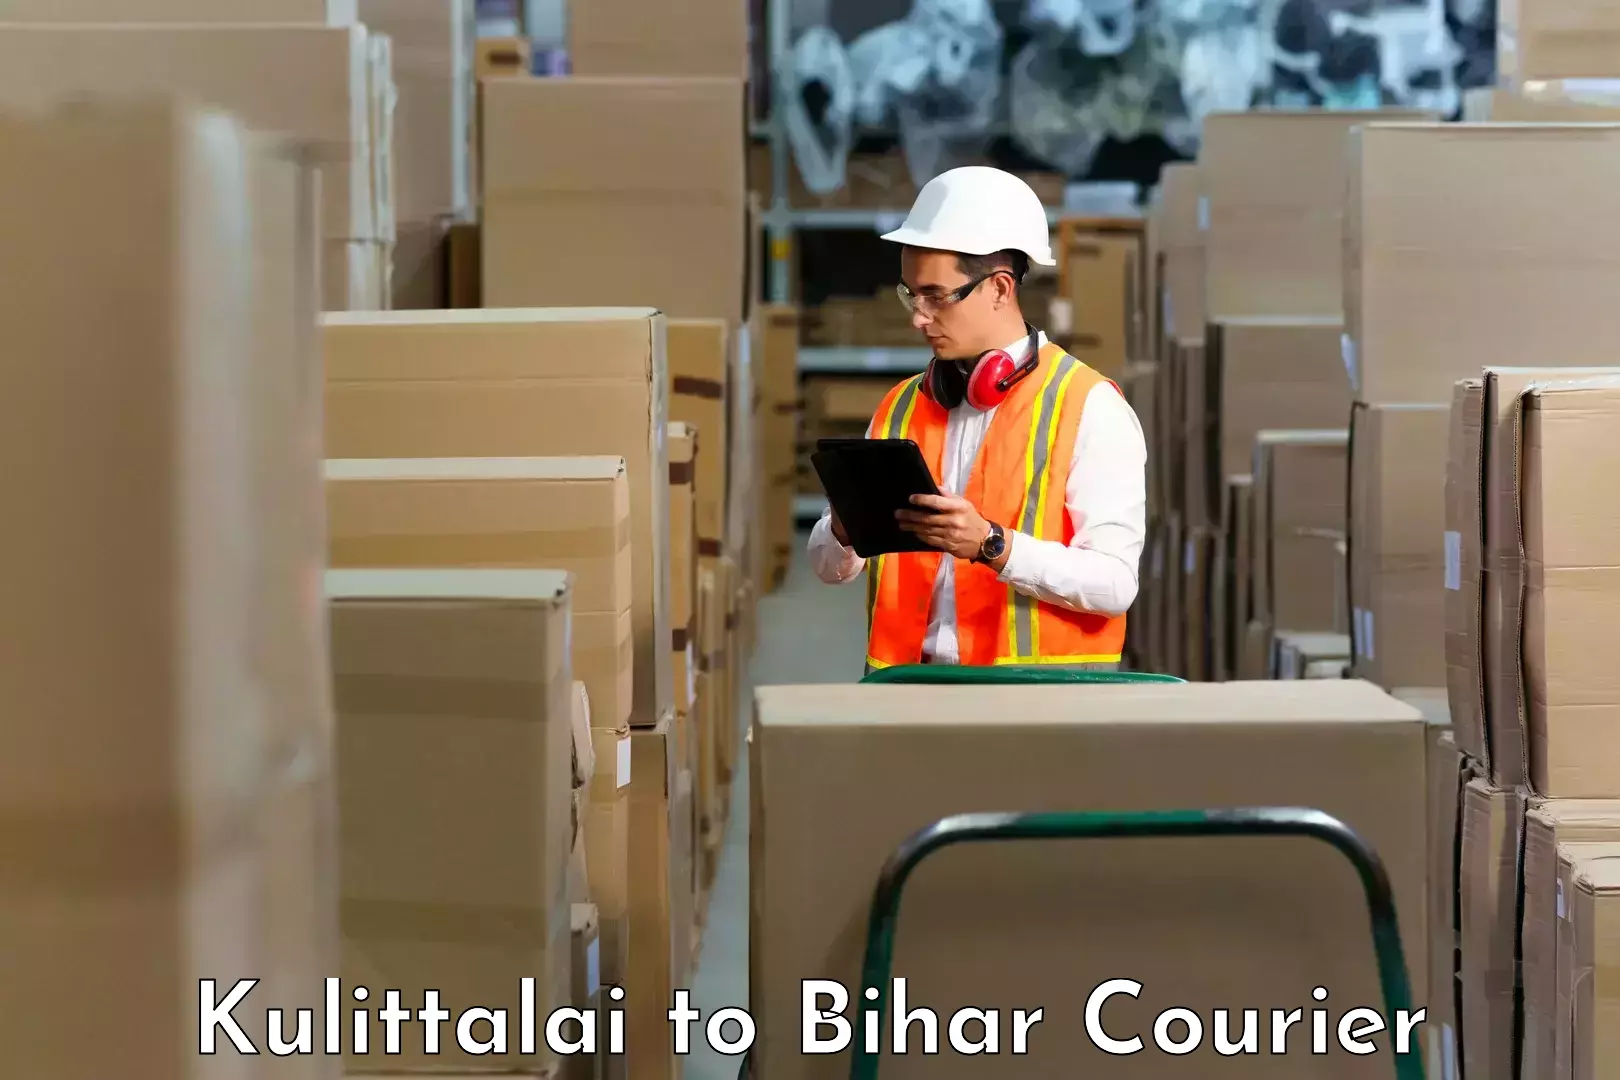 Tailored freight services Kulittalai to Bihar